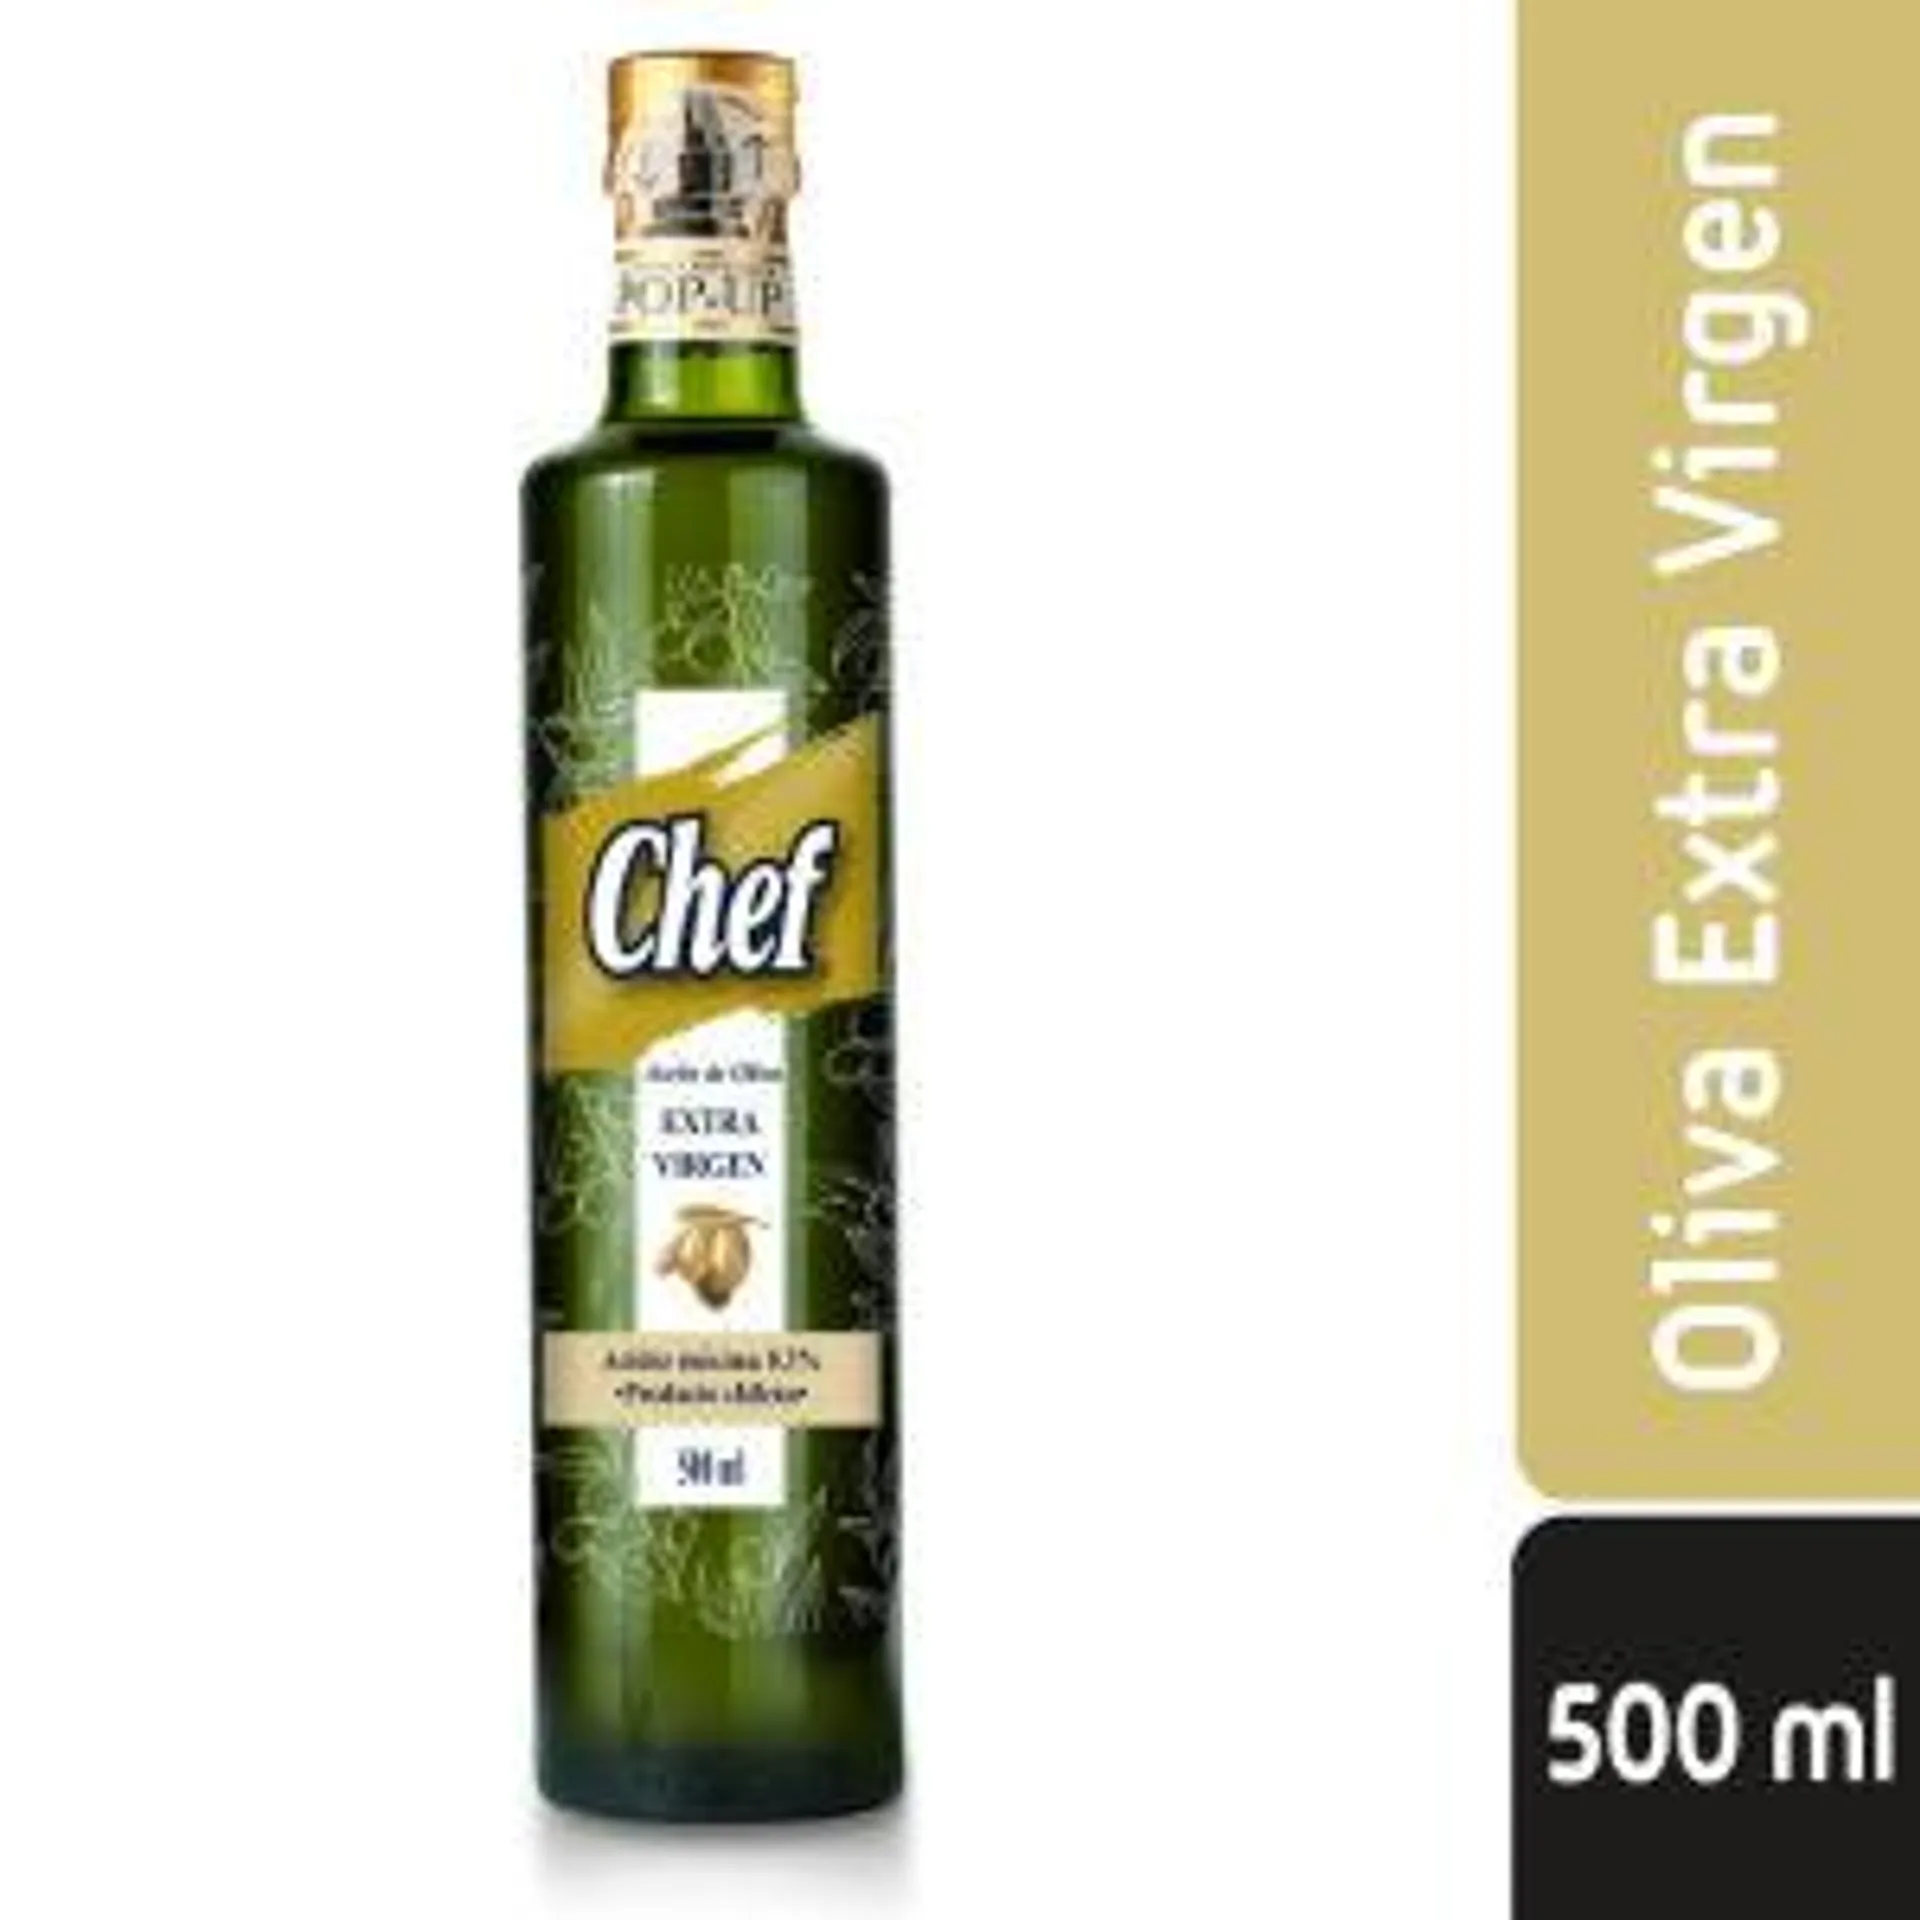 Aceite De Oliva Botella., 500 ml